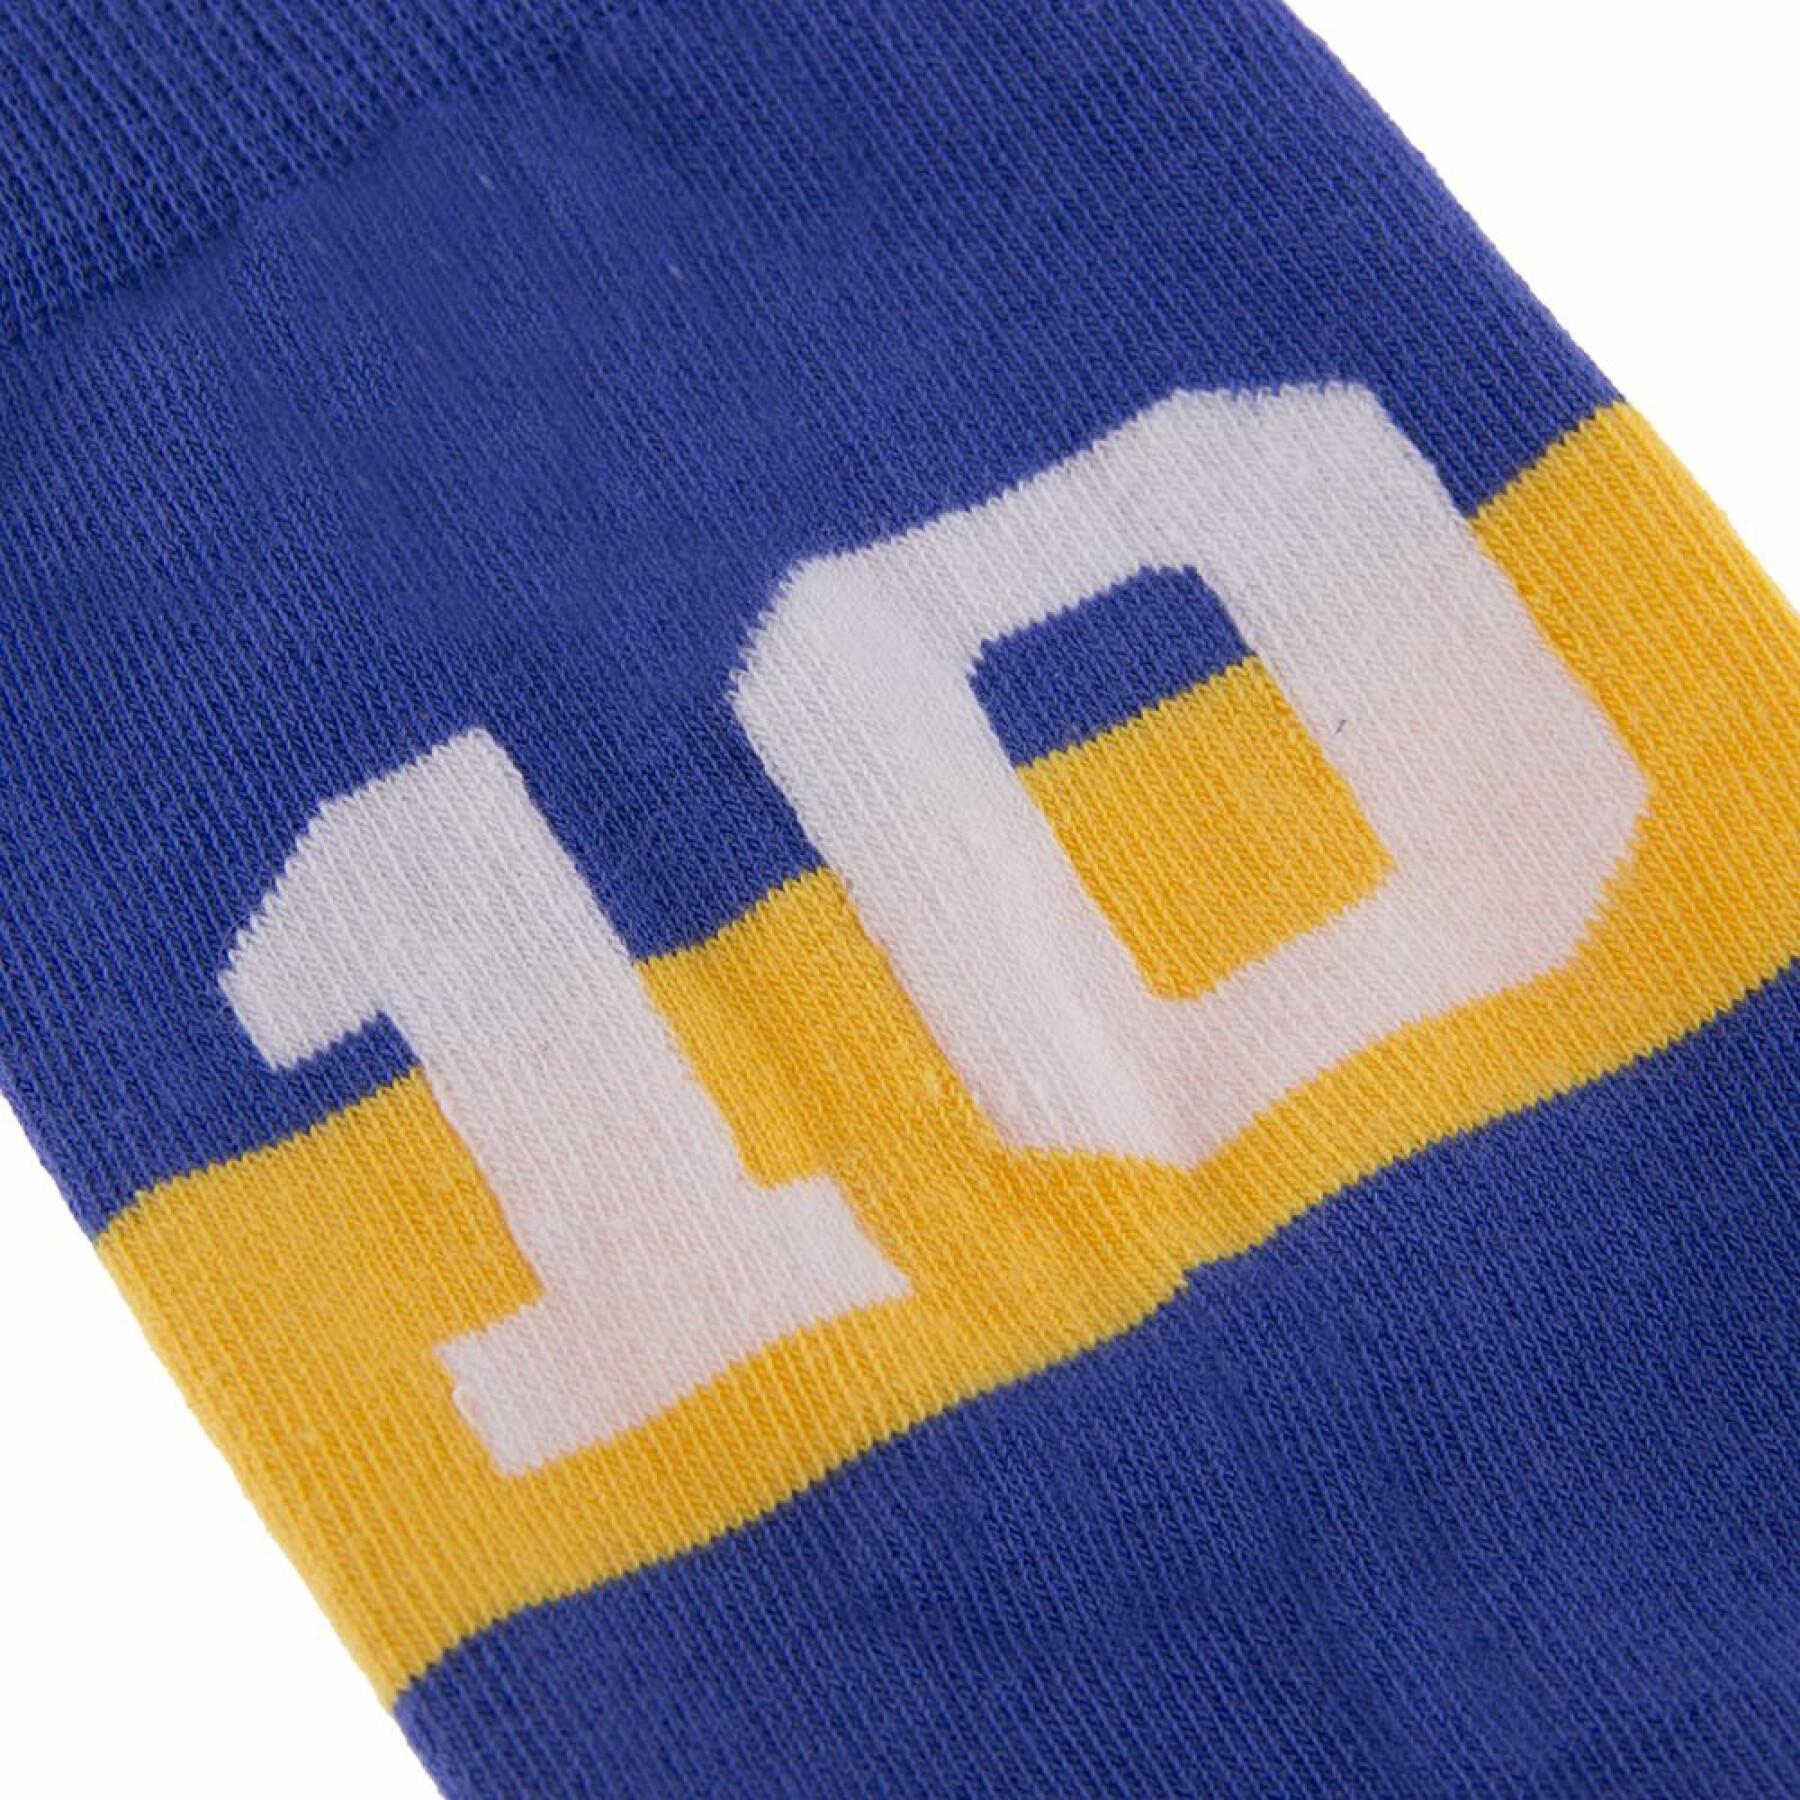 Socken Nummer 10 Copa Boca Juniors Maradona